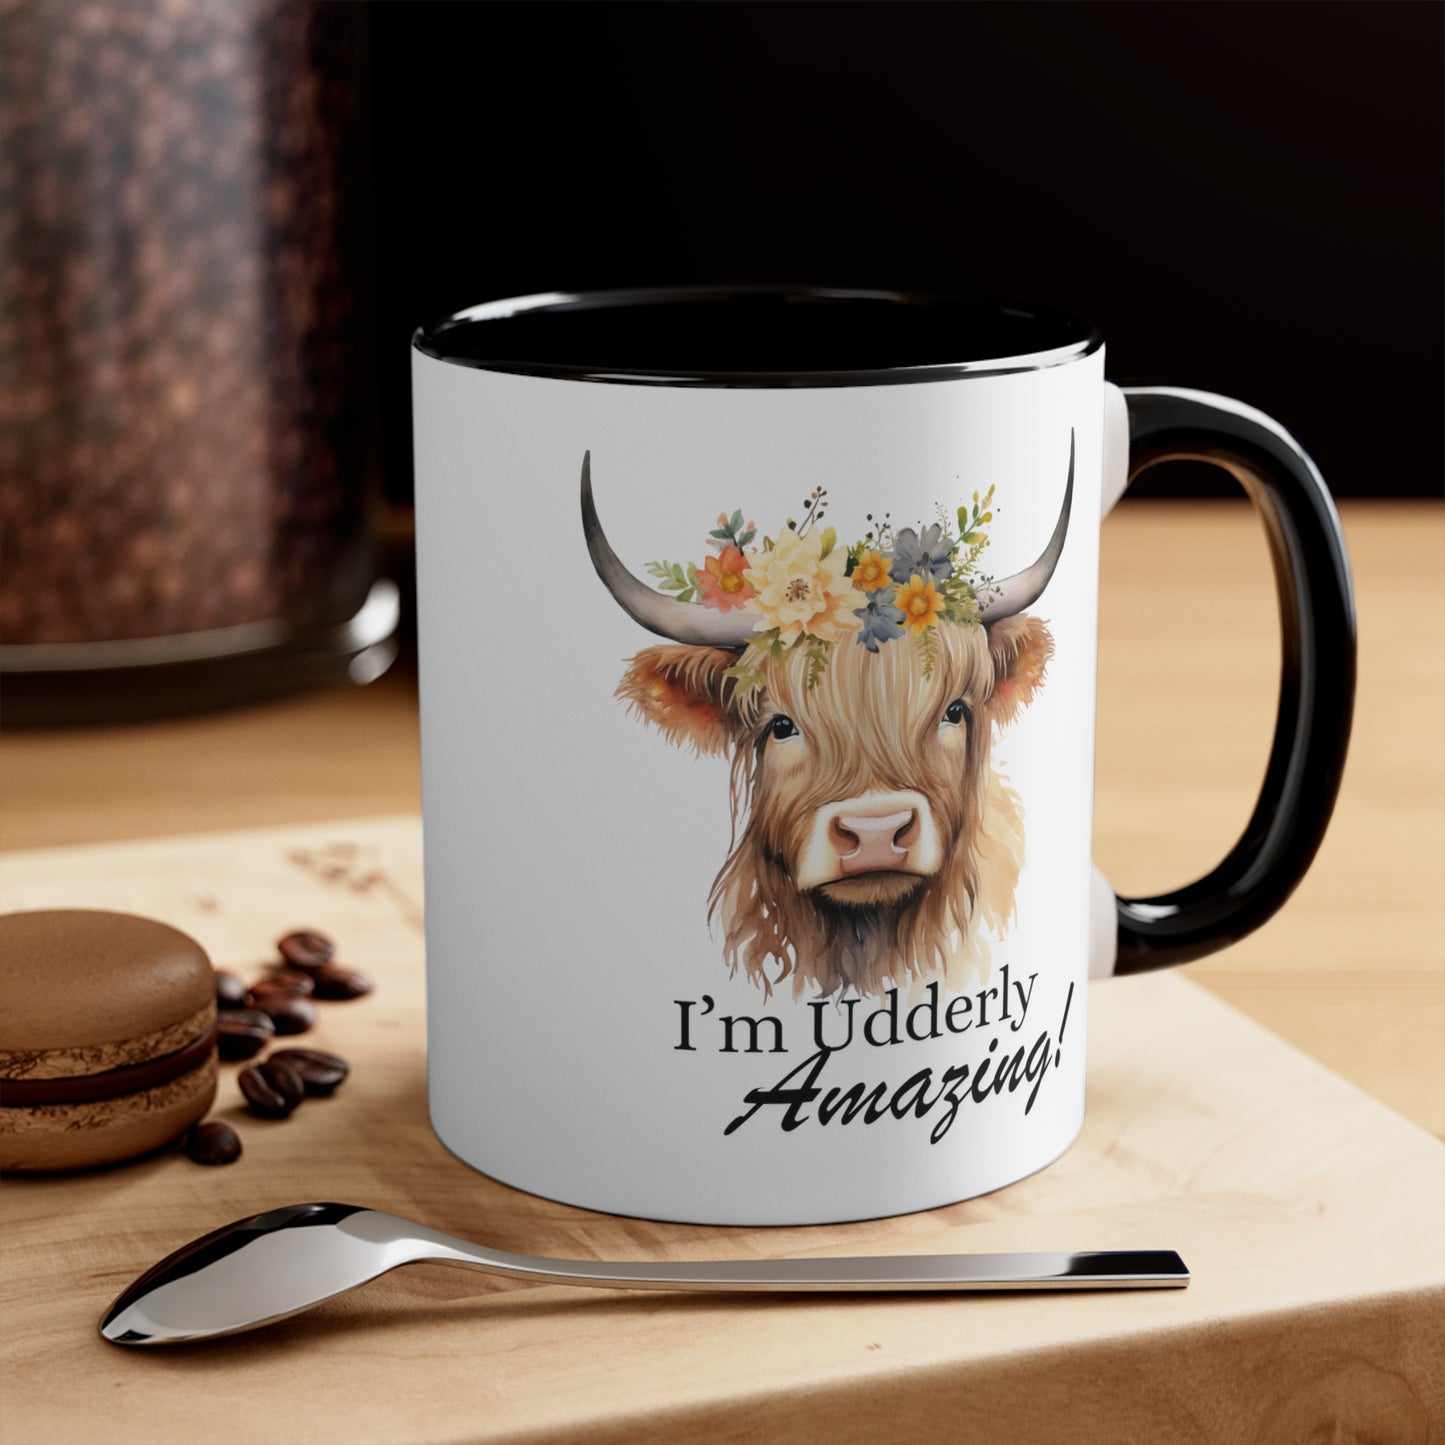 I'm Udderly Amazing! Accent Coffee Mug, 11oz